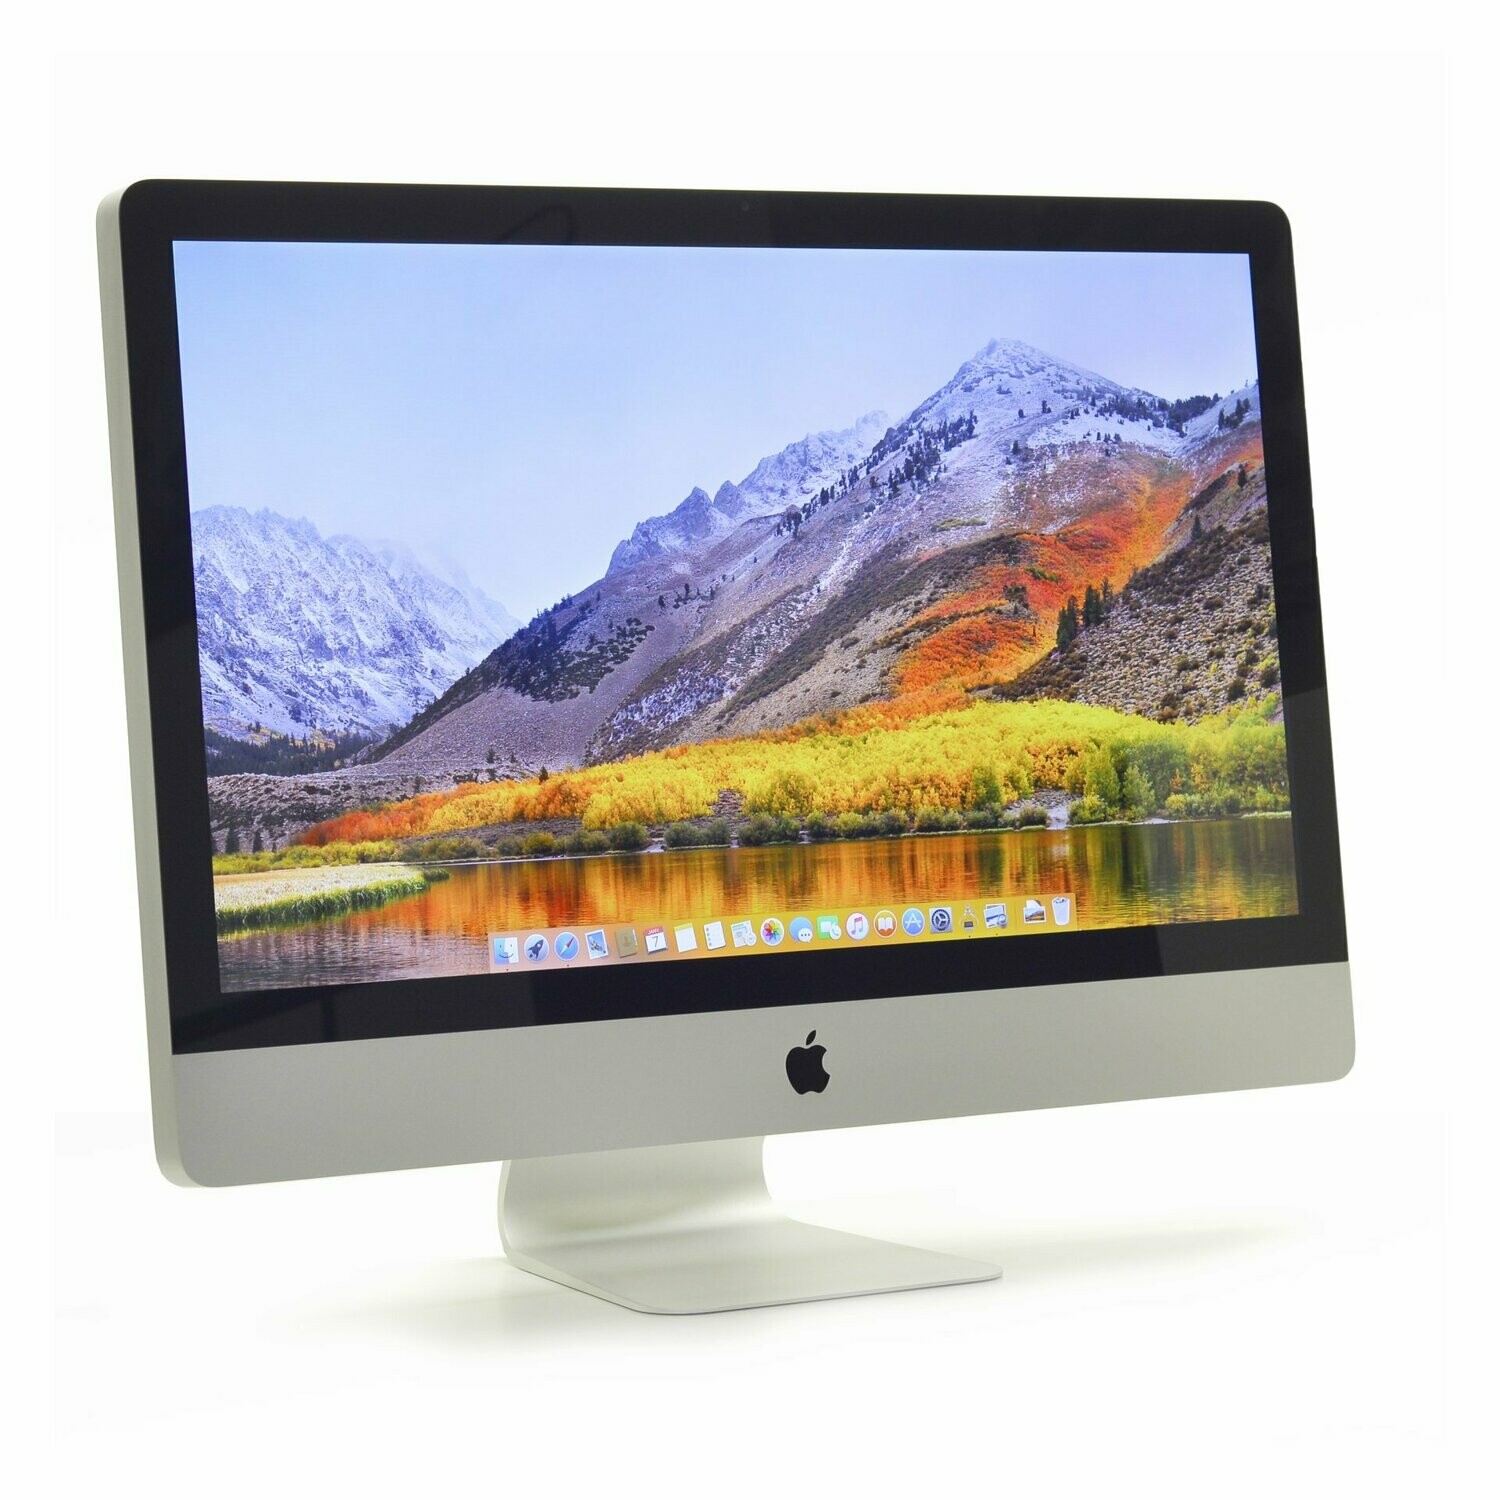 iMac 27" A1312 C2D 2009 3,06 Ghz 1 To (iMac 10,1)